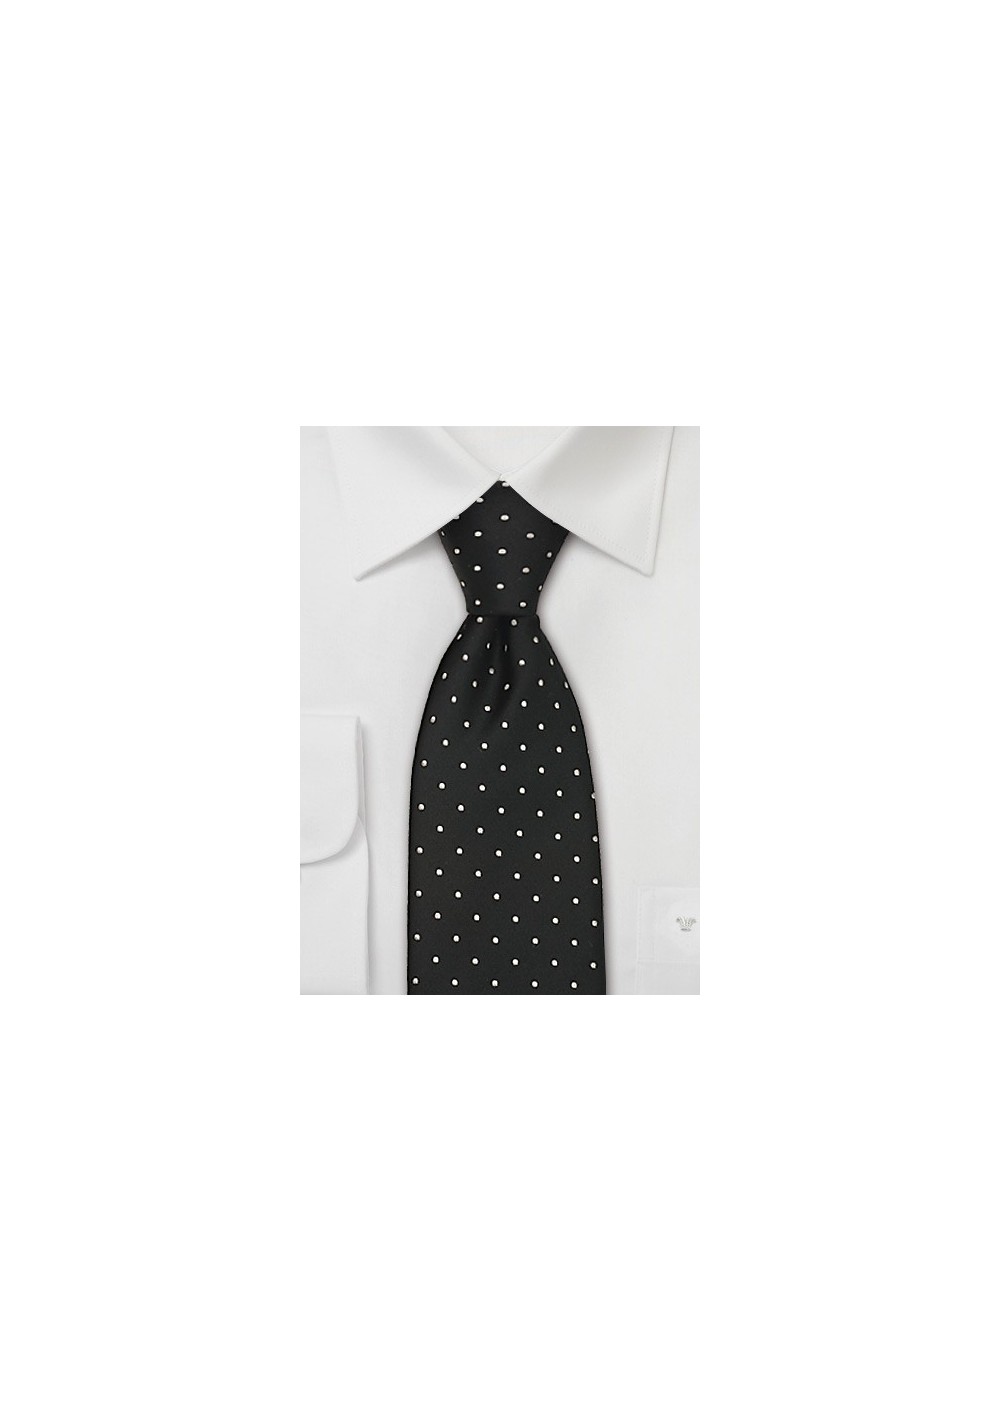 Black & White Polka Dot Tie in XL